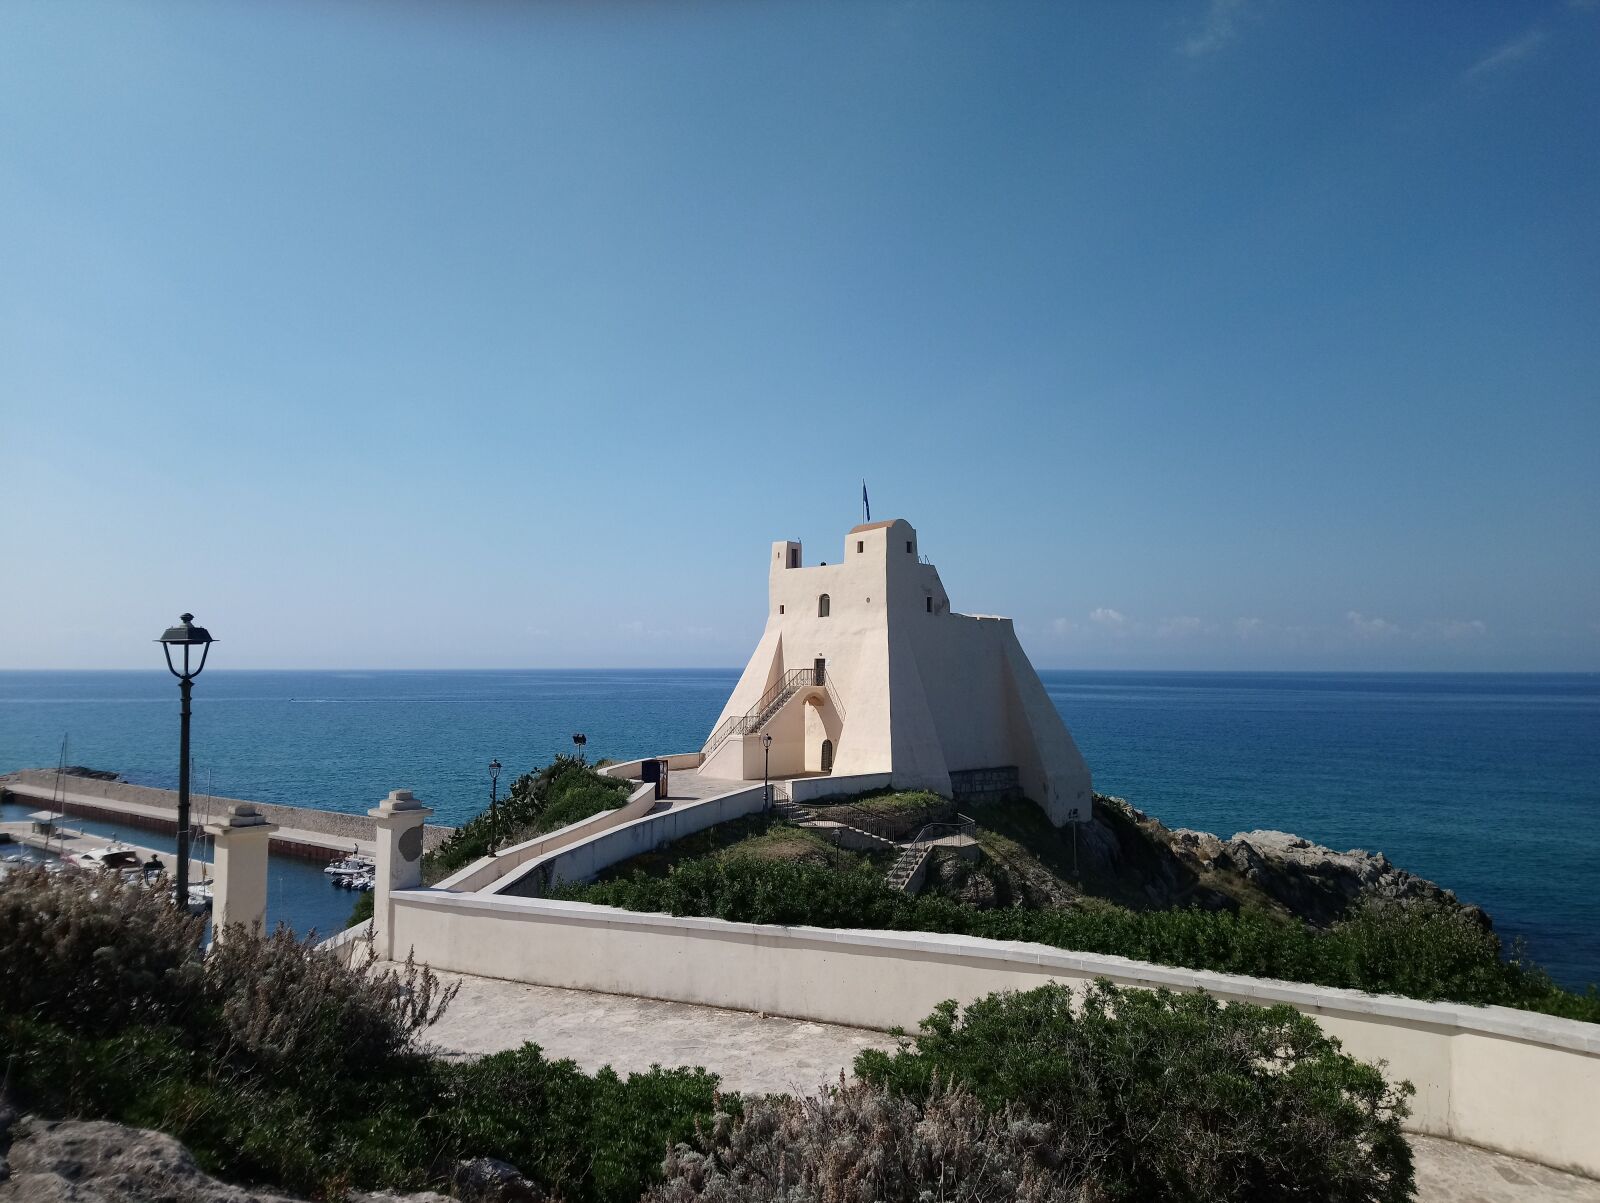 Sony Xperia XA1 sample photo. Italy, tower, sea photography